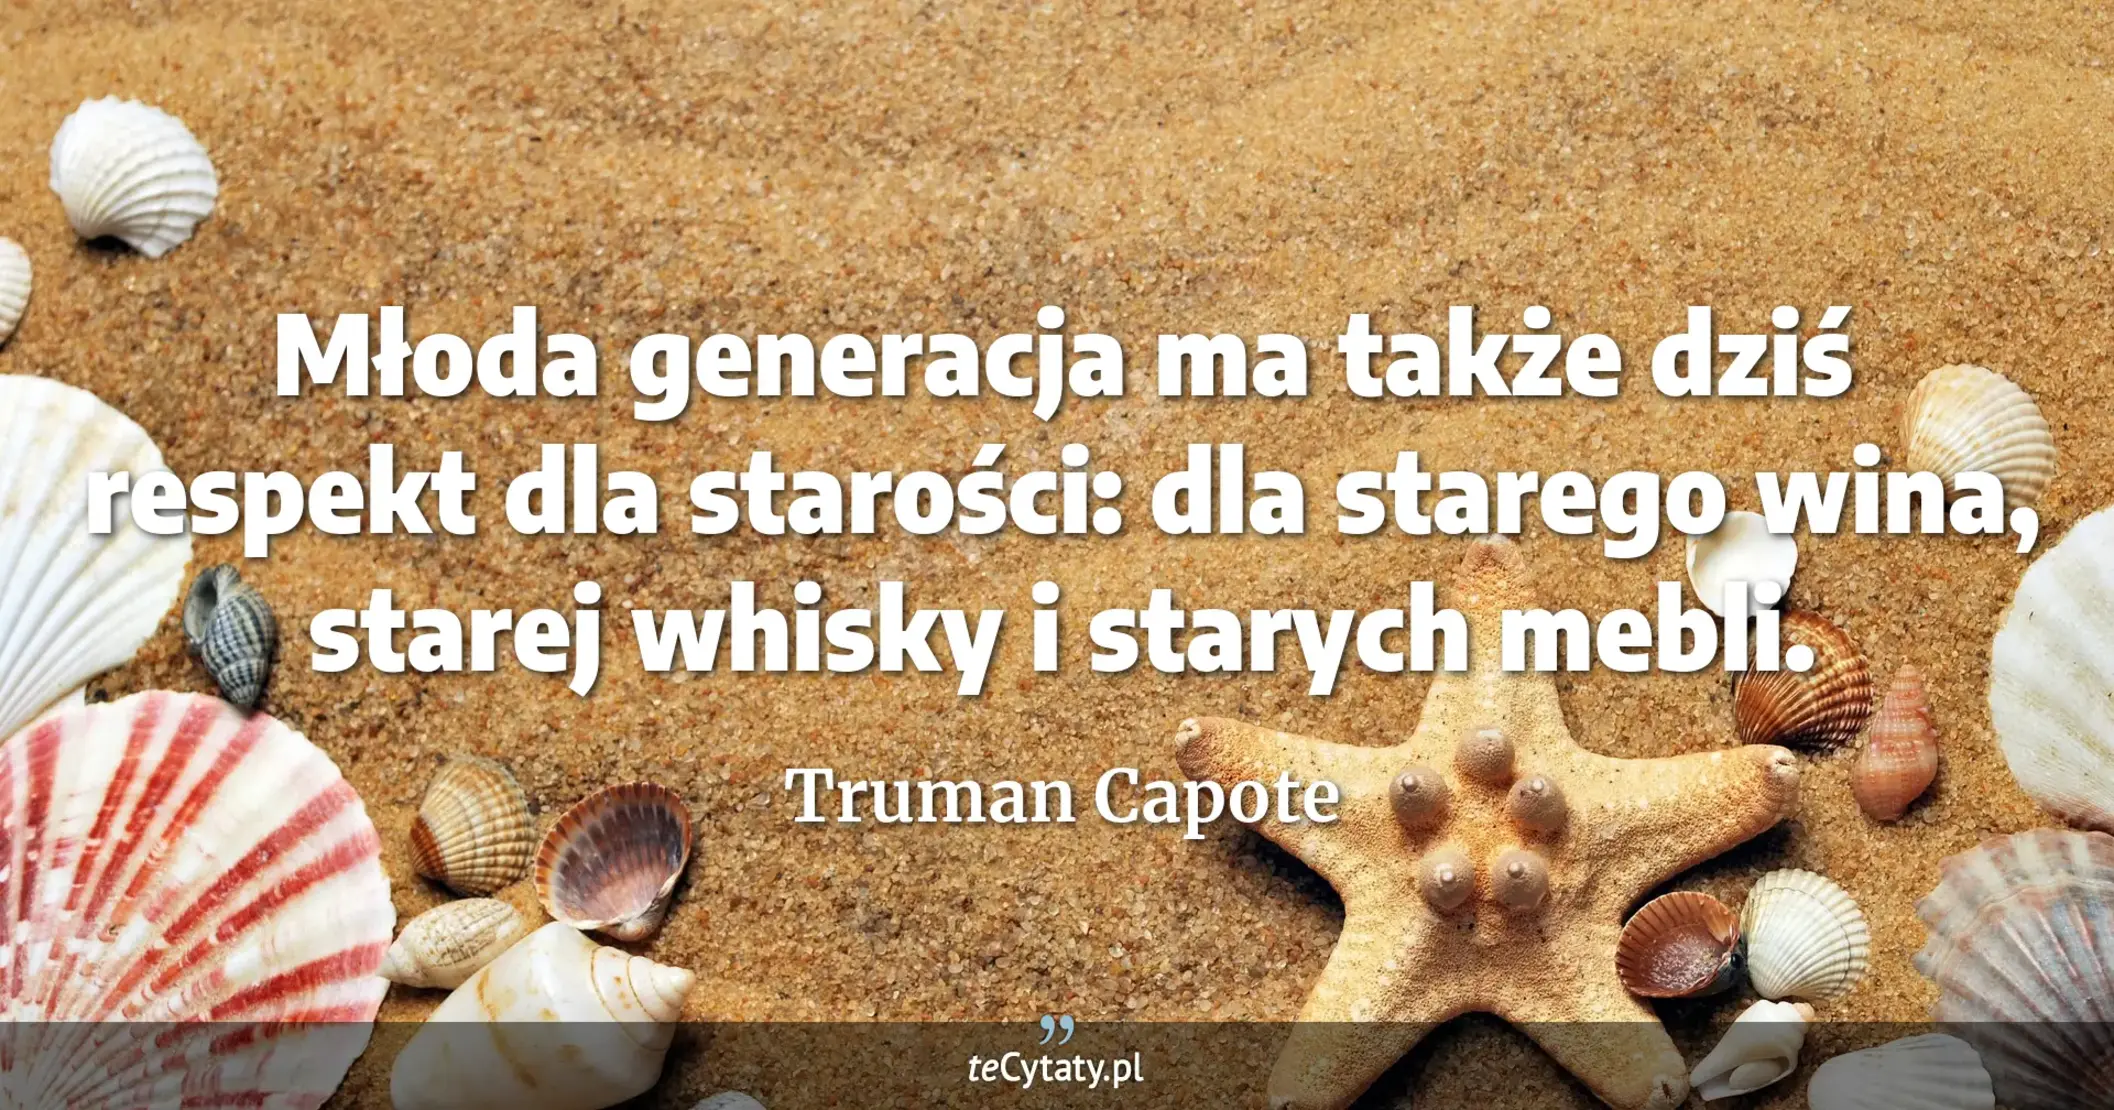 Młoda generacja ma także dziś respekt dla starości: dla starego wina, starej whisky i starych mebli. - Truman Capote